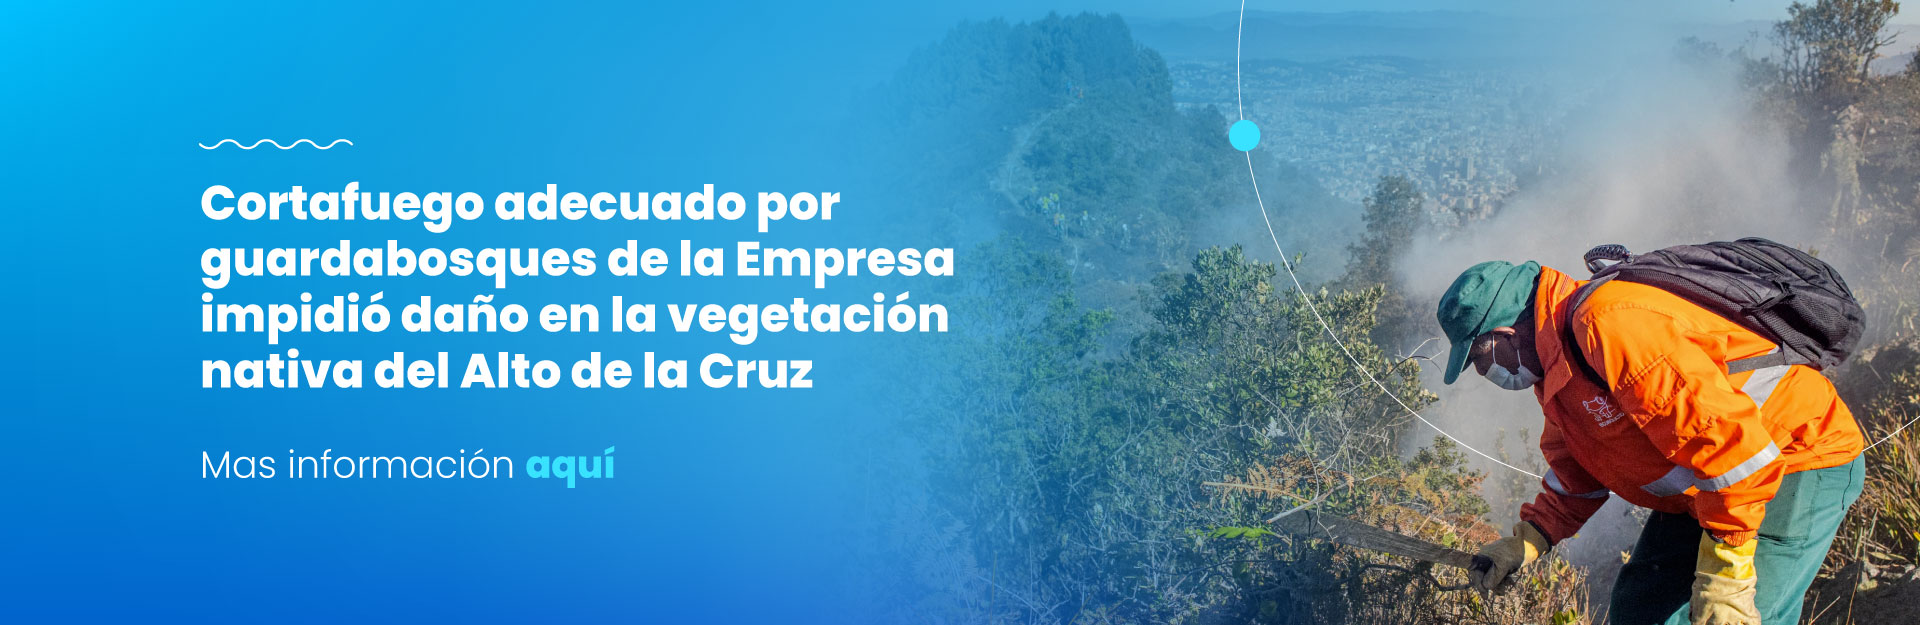 Cortafuego adecuado por guardabosques del Acueducto de Bogotá impidió daño en la vegetación nativa del Alto de la Cruz